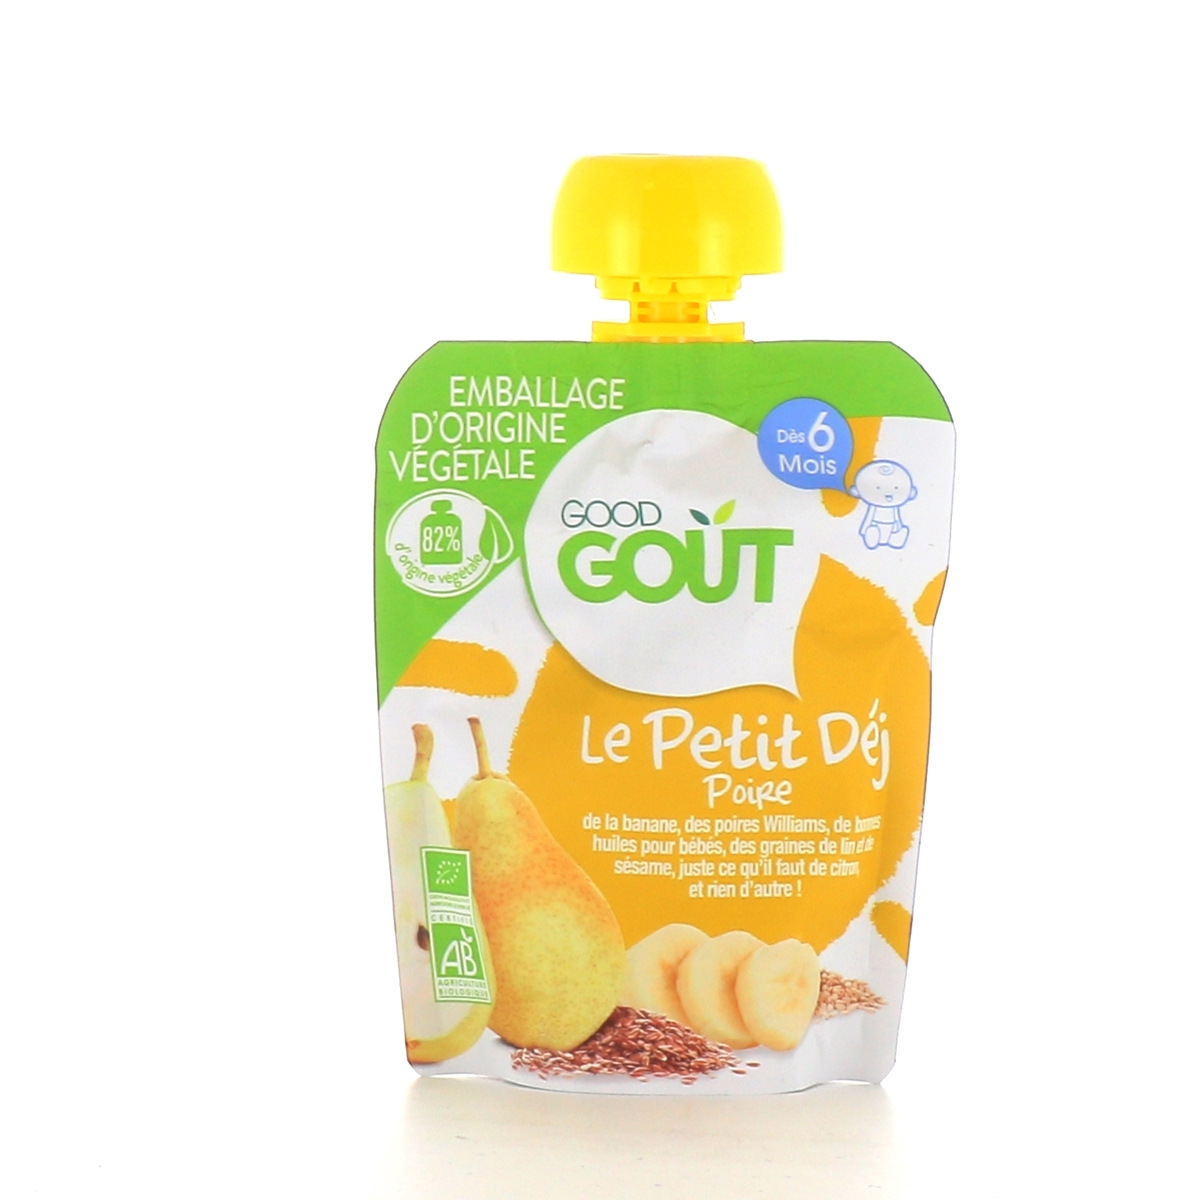 Petit dej mangue good gout